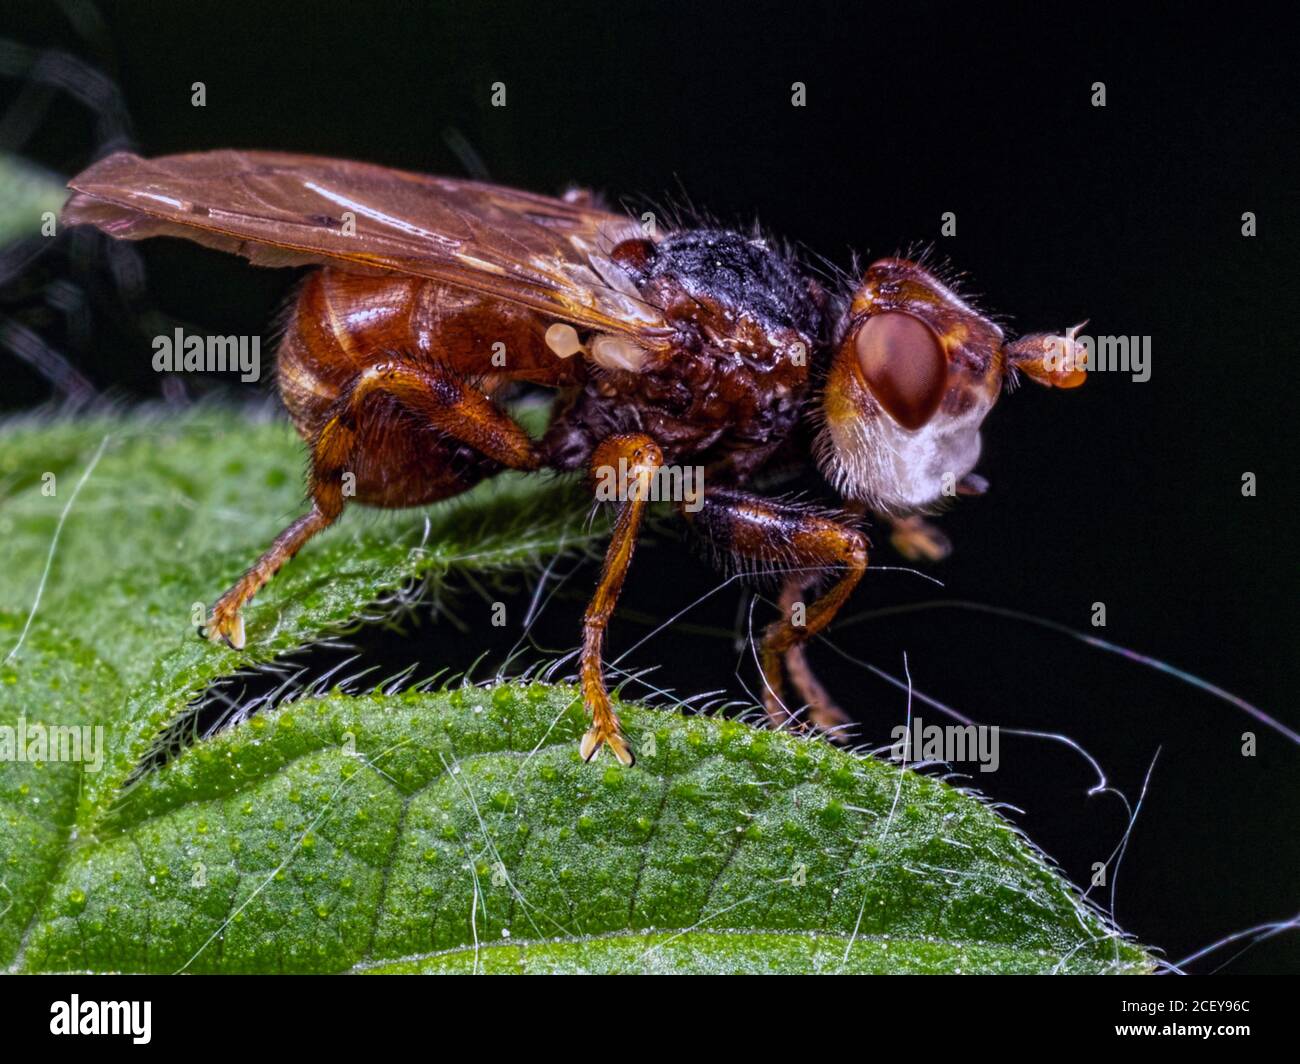 Profilo di una mosca a testa spessa di Myopa pellucida. Si trova nella riserva naturale dei laghi di Blashford, nell'Hampshire Foto Stock